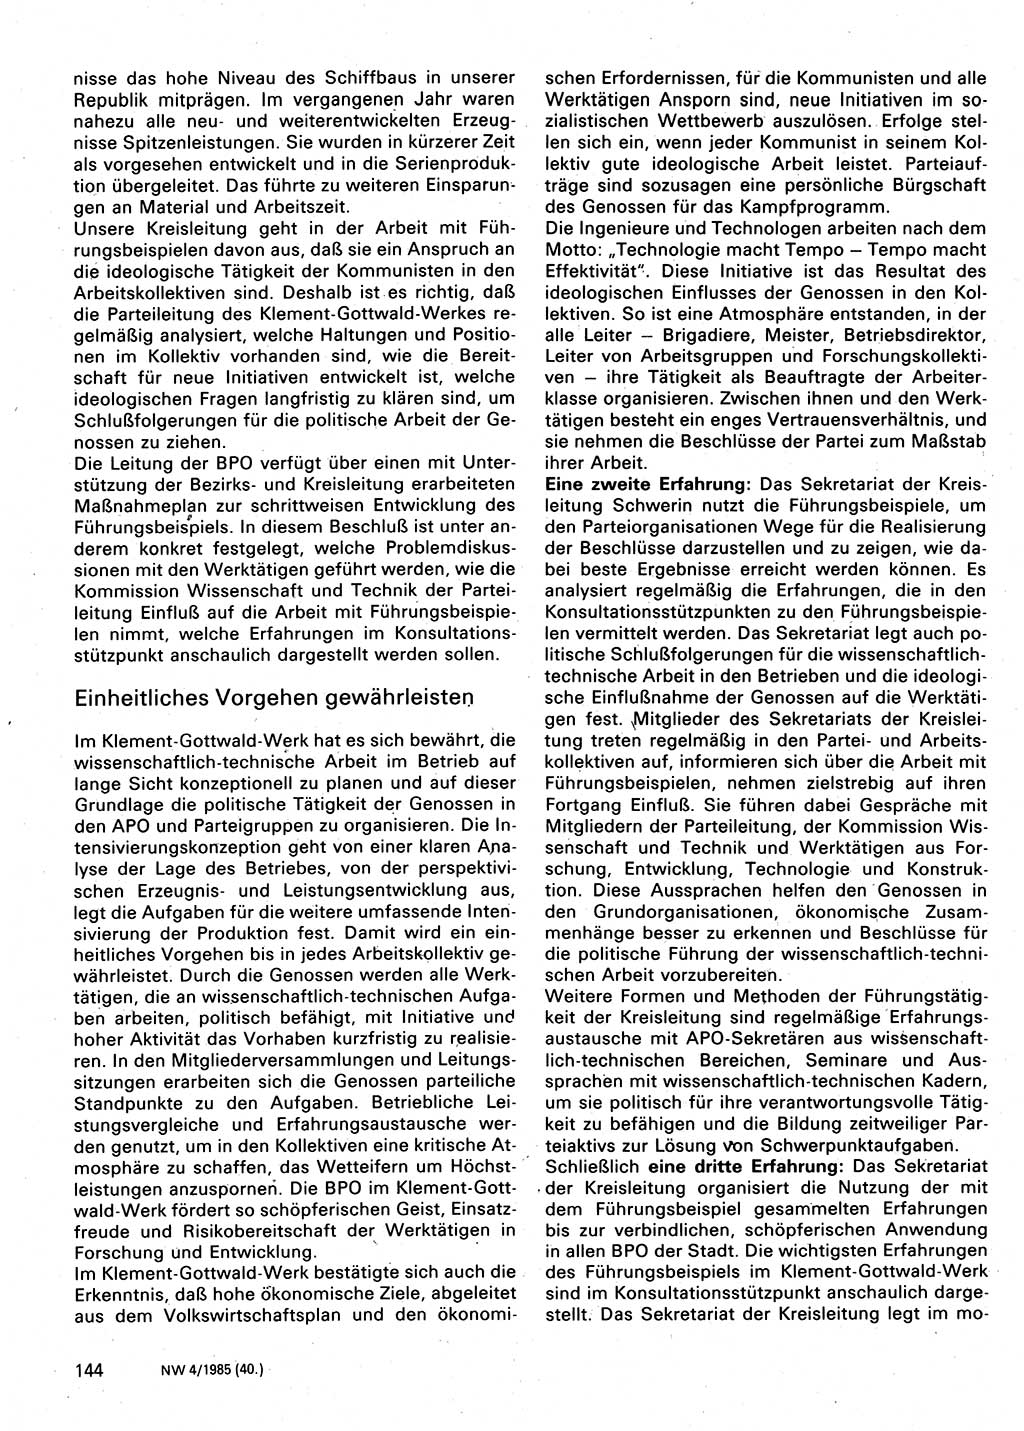 Neuer Weg (NW), Organ des Zentralkomitees (ZK) der SED (Sozialistische Einheitspartei Deutschlands) für Fragen des Parteilebens, 40. Jahrgang [Deutsche Demokratische Republik (DDR)] 1985, Seite 144 (NW ZK SED DDR 1985, S. 144)